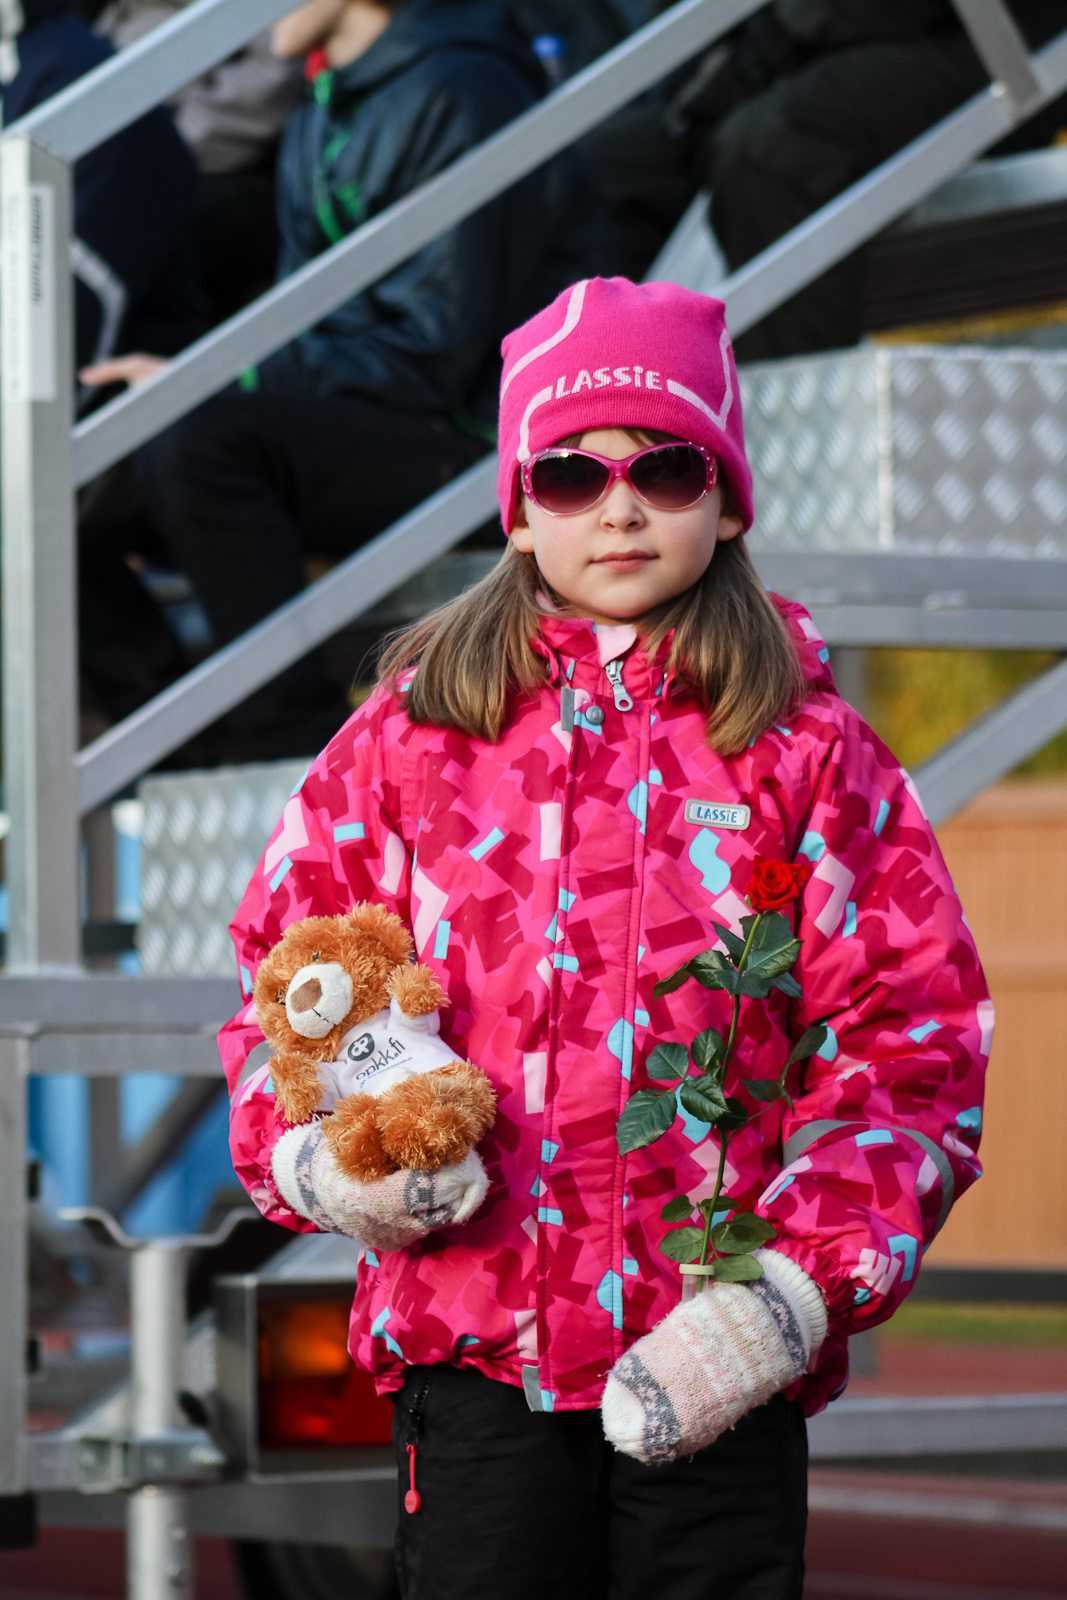 11-Päivän pinkeimmästä asusta palkittiin yhdeksänvuotias Jenna Kanerva.